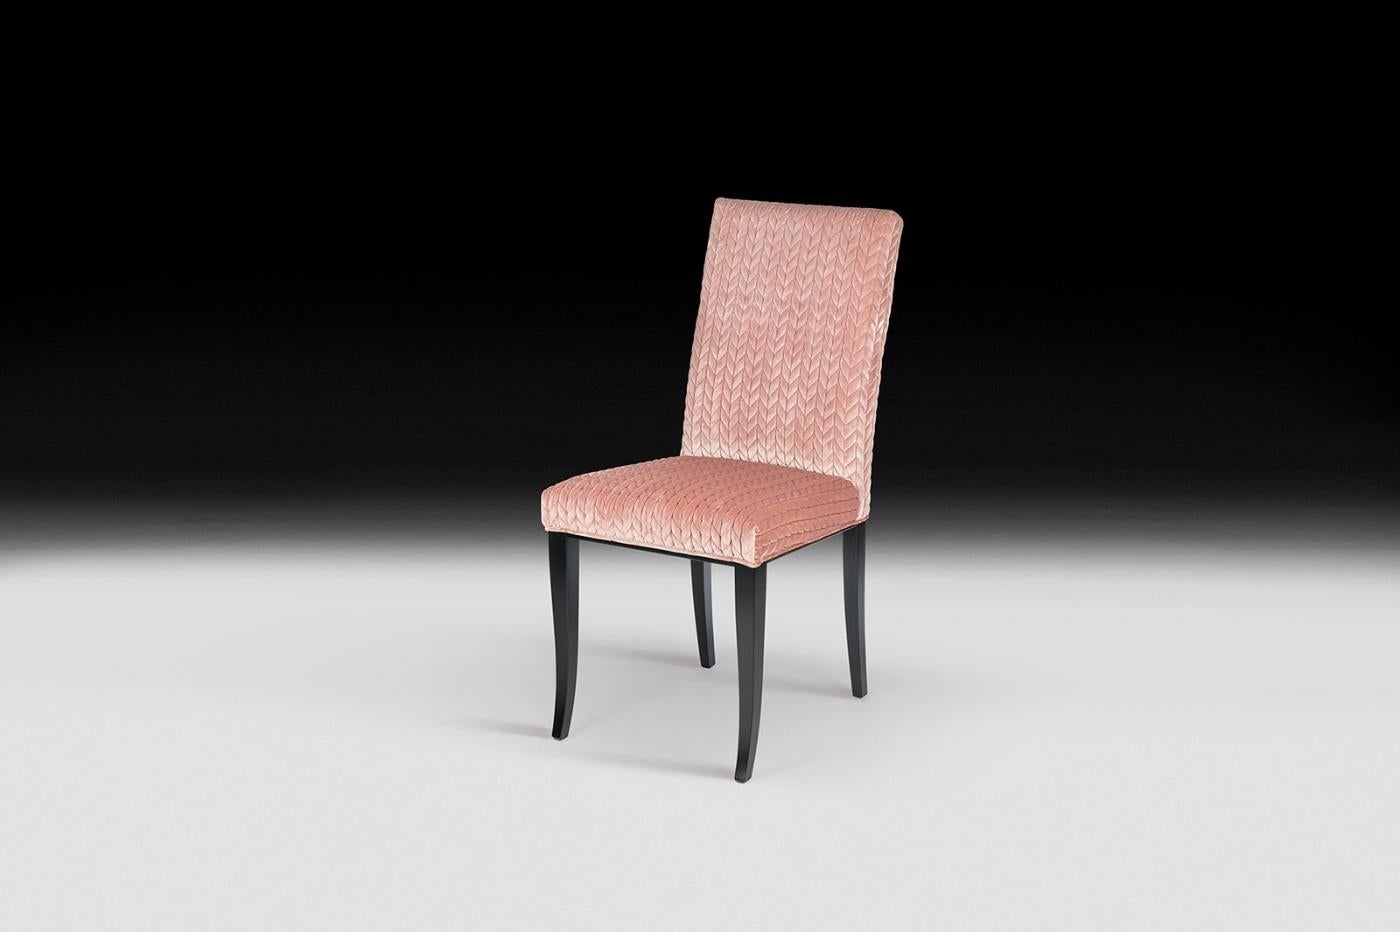 VG-Möbel stehen für Luxus im Sinne von Exklusivität, Auszeichnung und hoher Qualität. Sie sind das Ergebnis eines anspruchsvollen und exklusiven Designs mit einer starken Identität und sind das Ergebnis einer sorgfältigen Beachtung der typischen